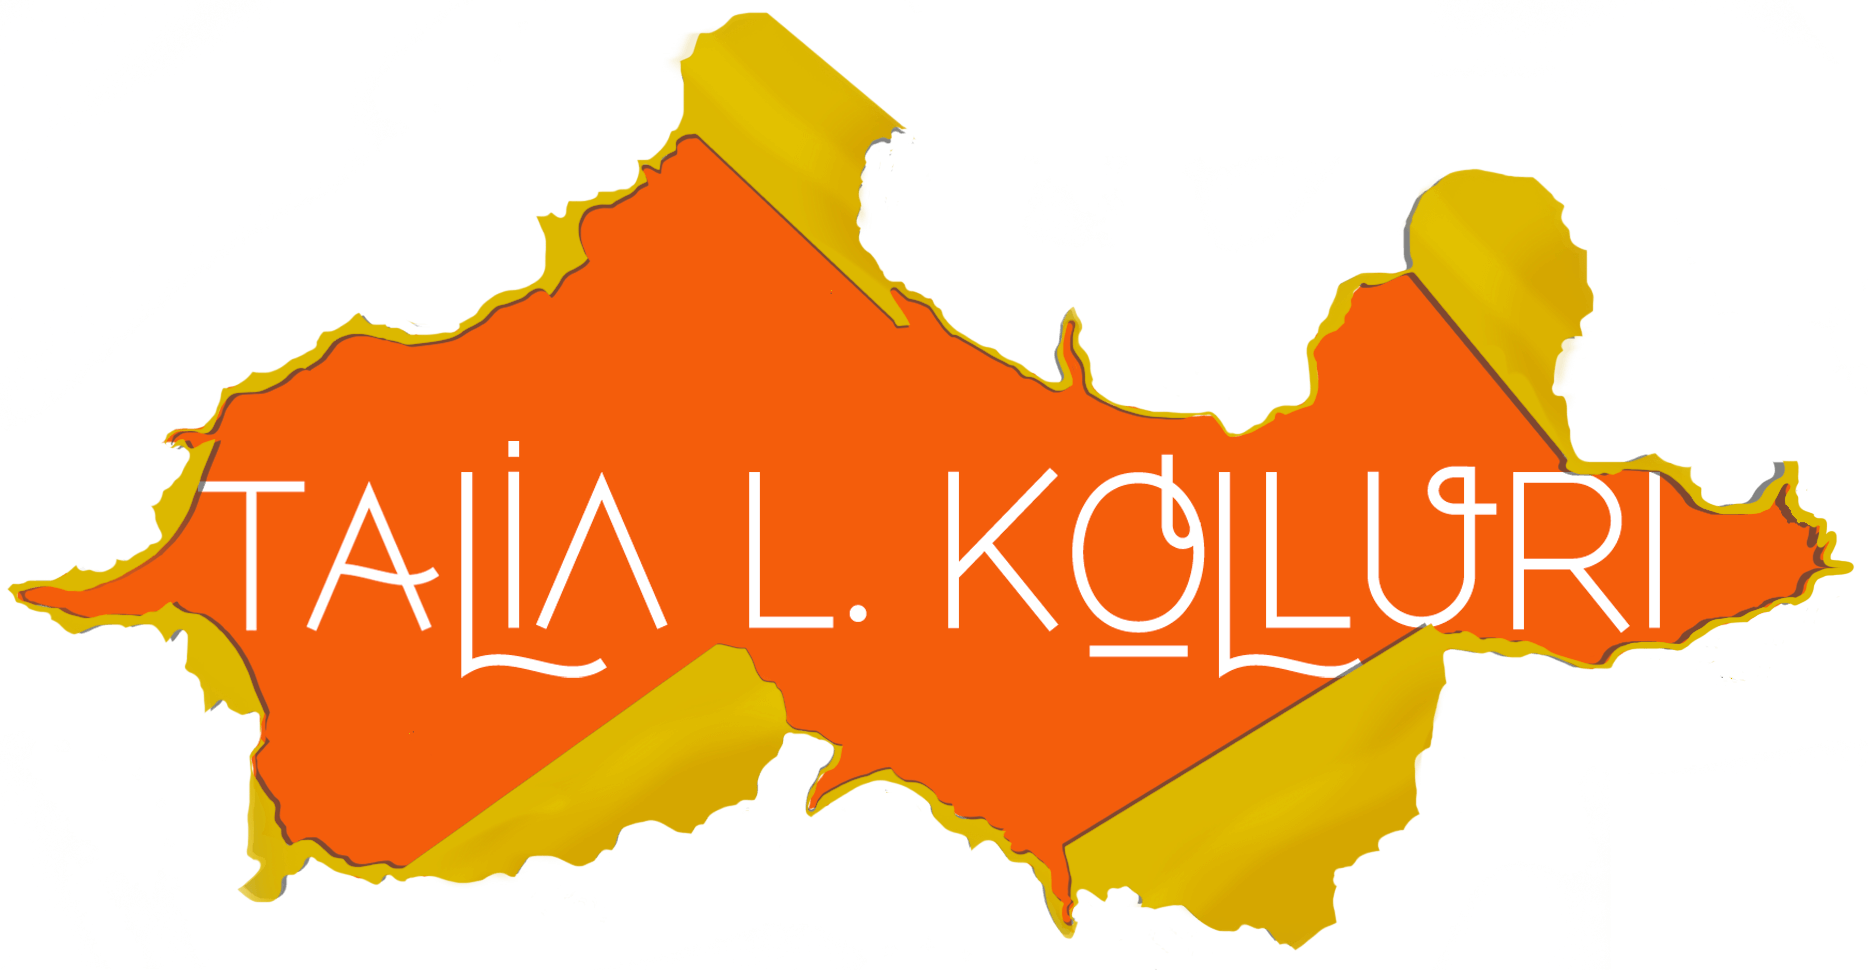 Talia Lakshmi Kolluri